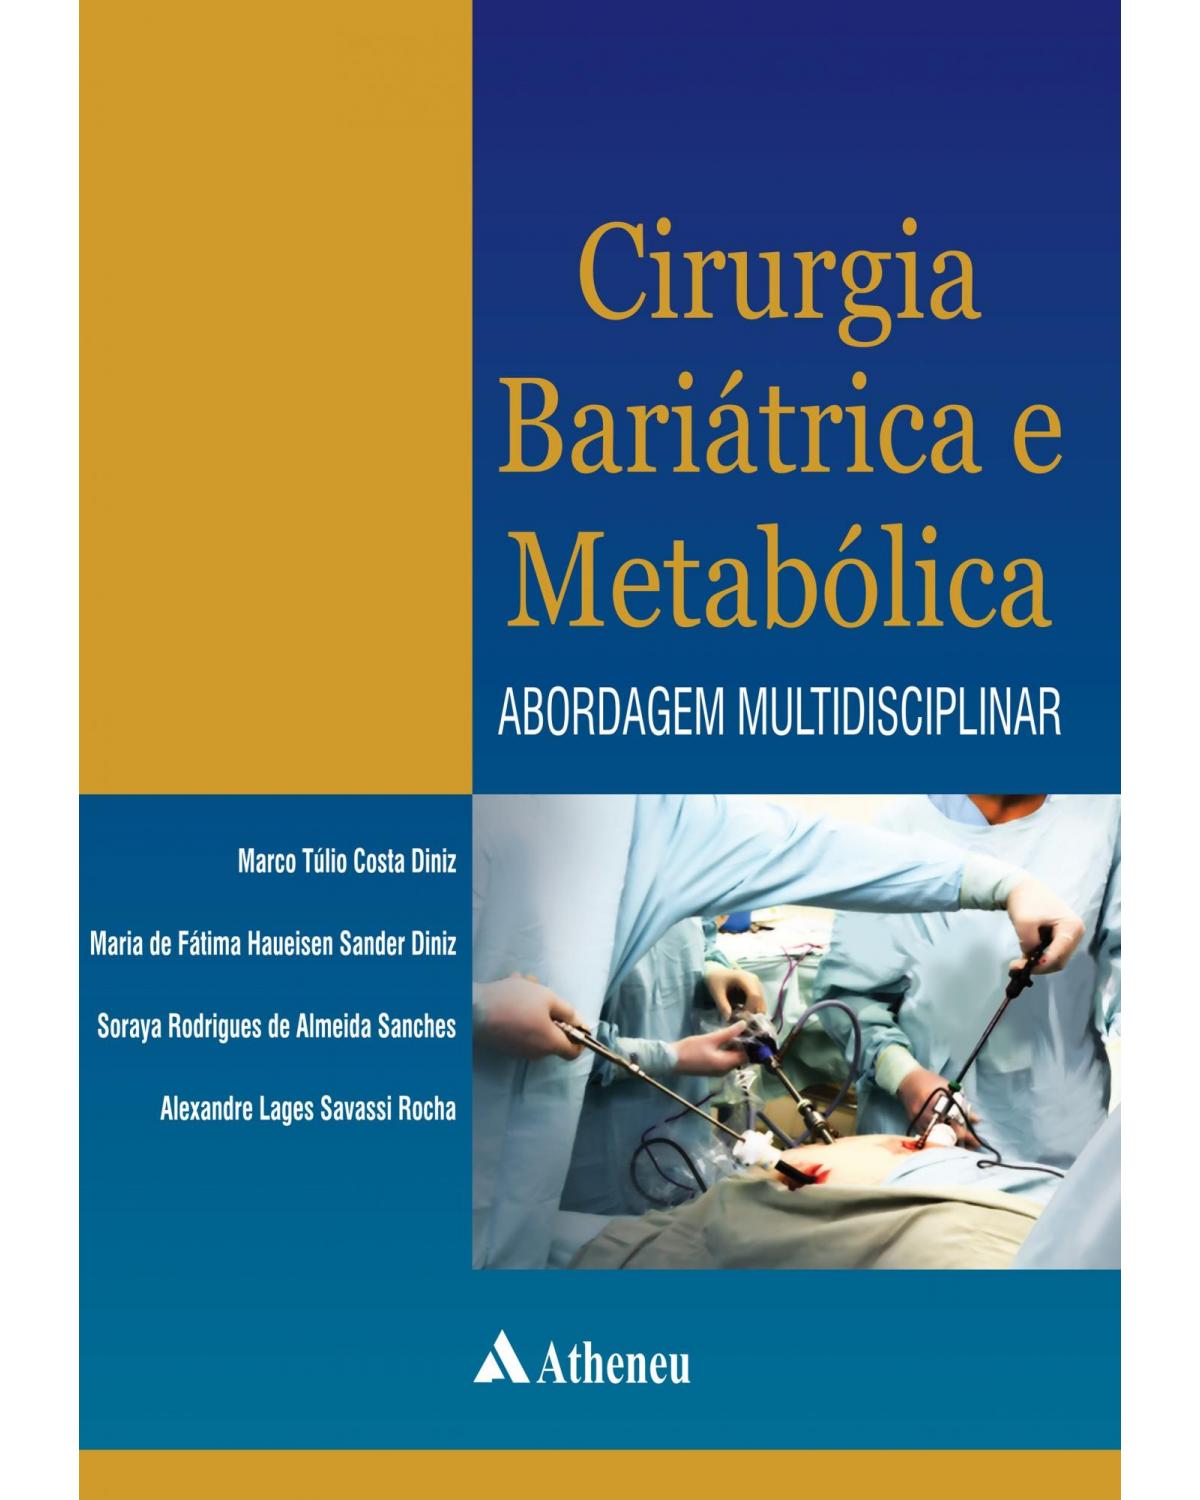 Cirurgia bariátrica e metabólica - abordagem multidisciplinar - 1ª Edição | 2012